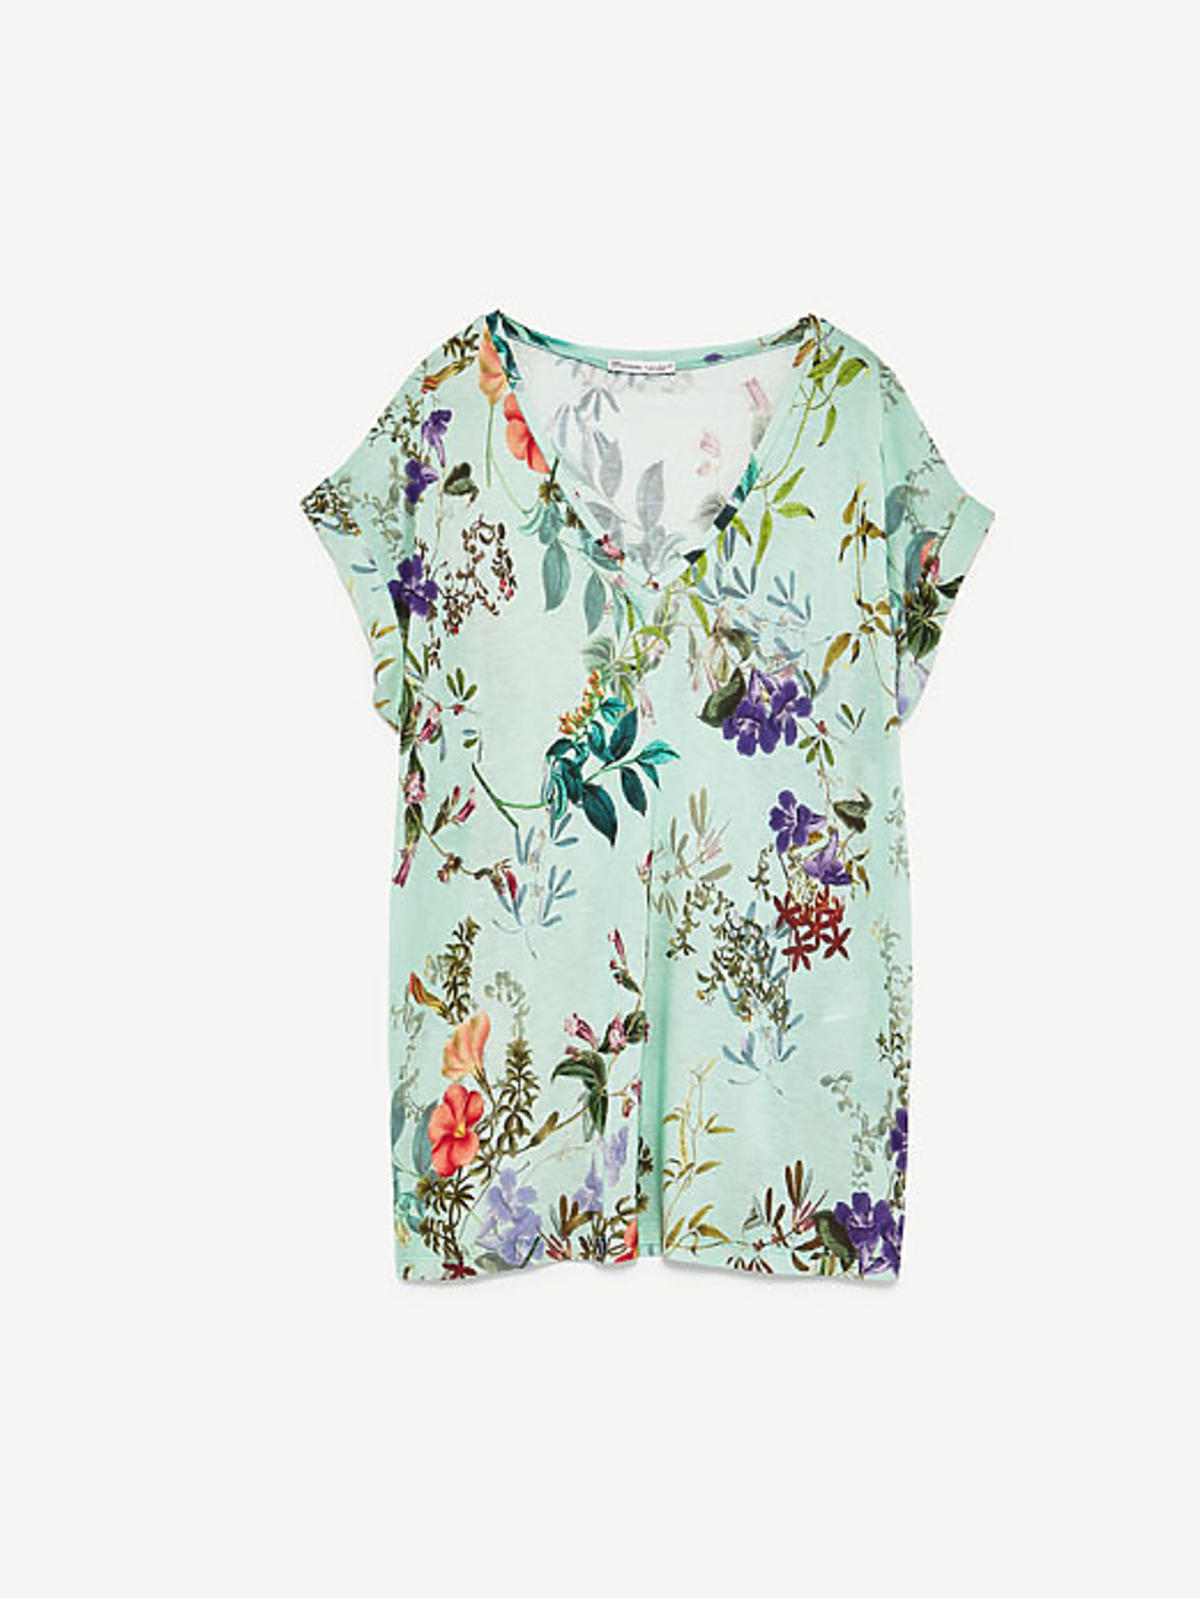 Koszulka z nadrukiem w kwiaty, Zara, 69,90 zł